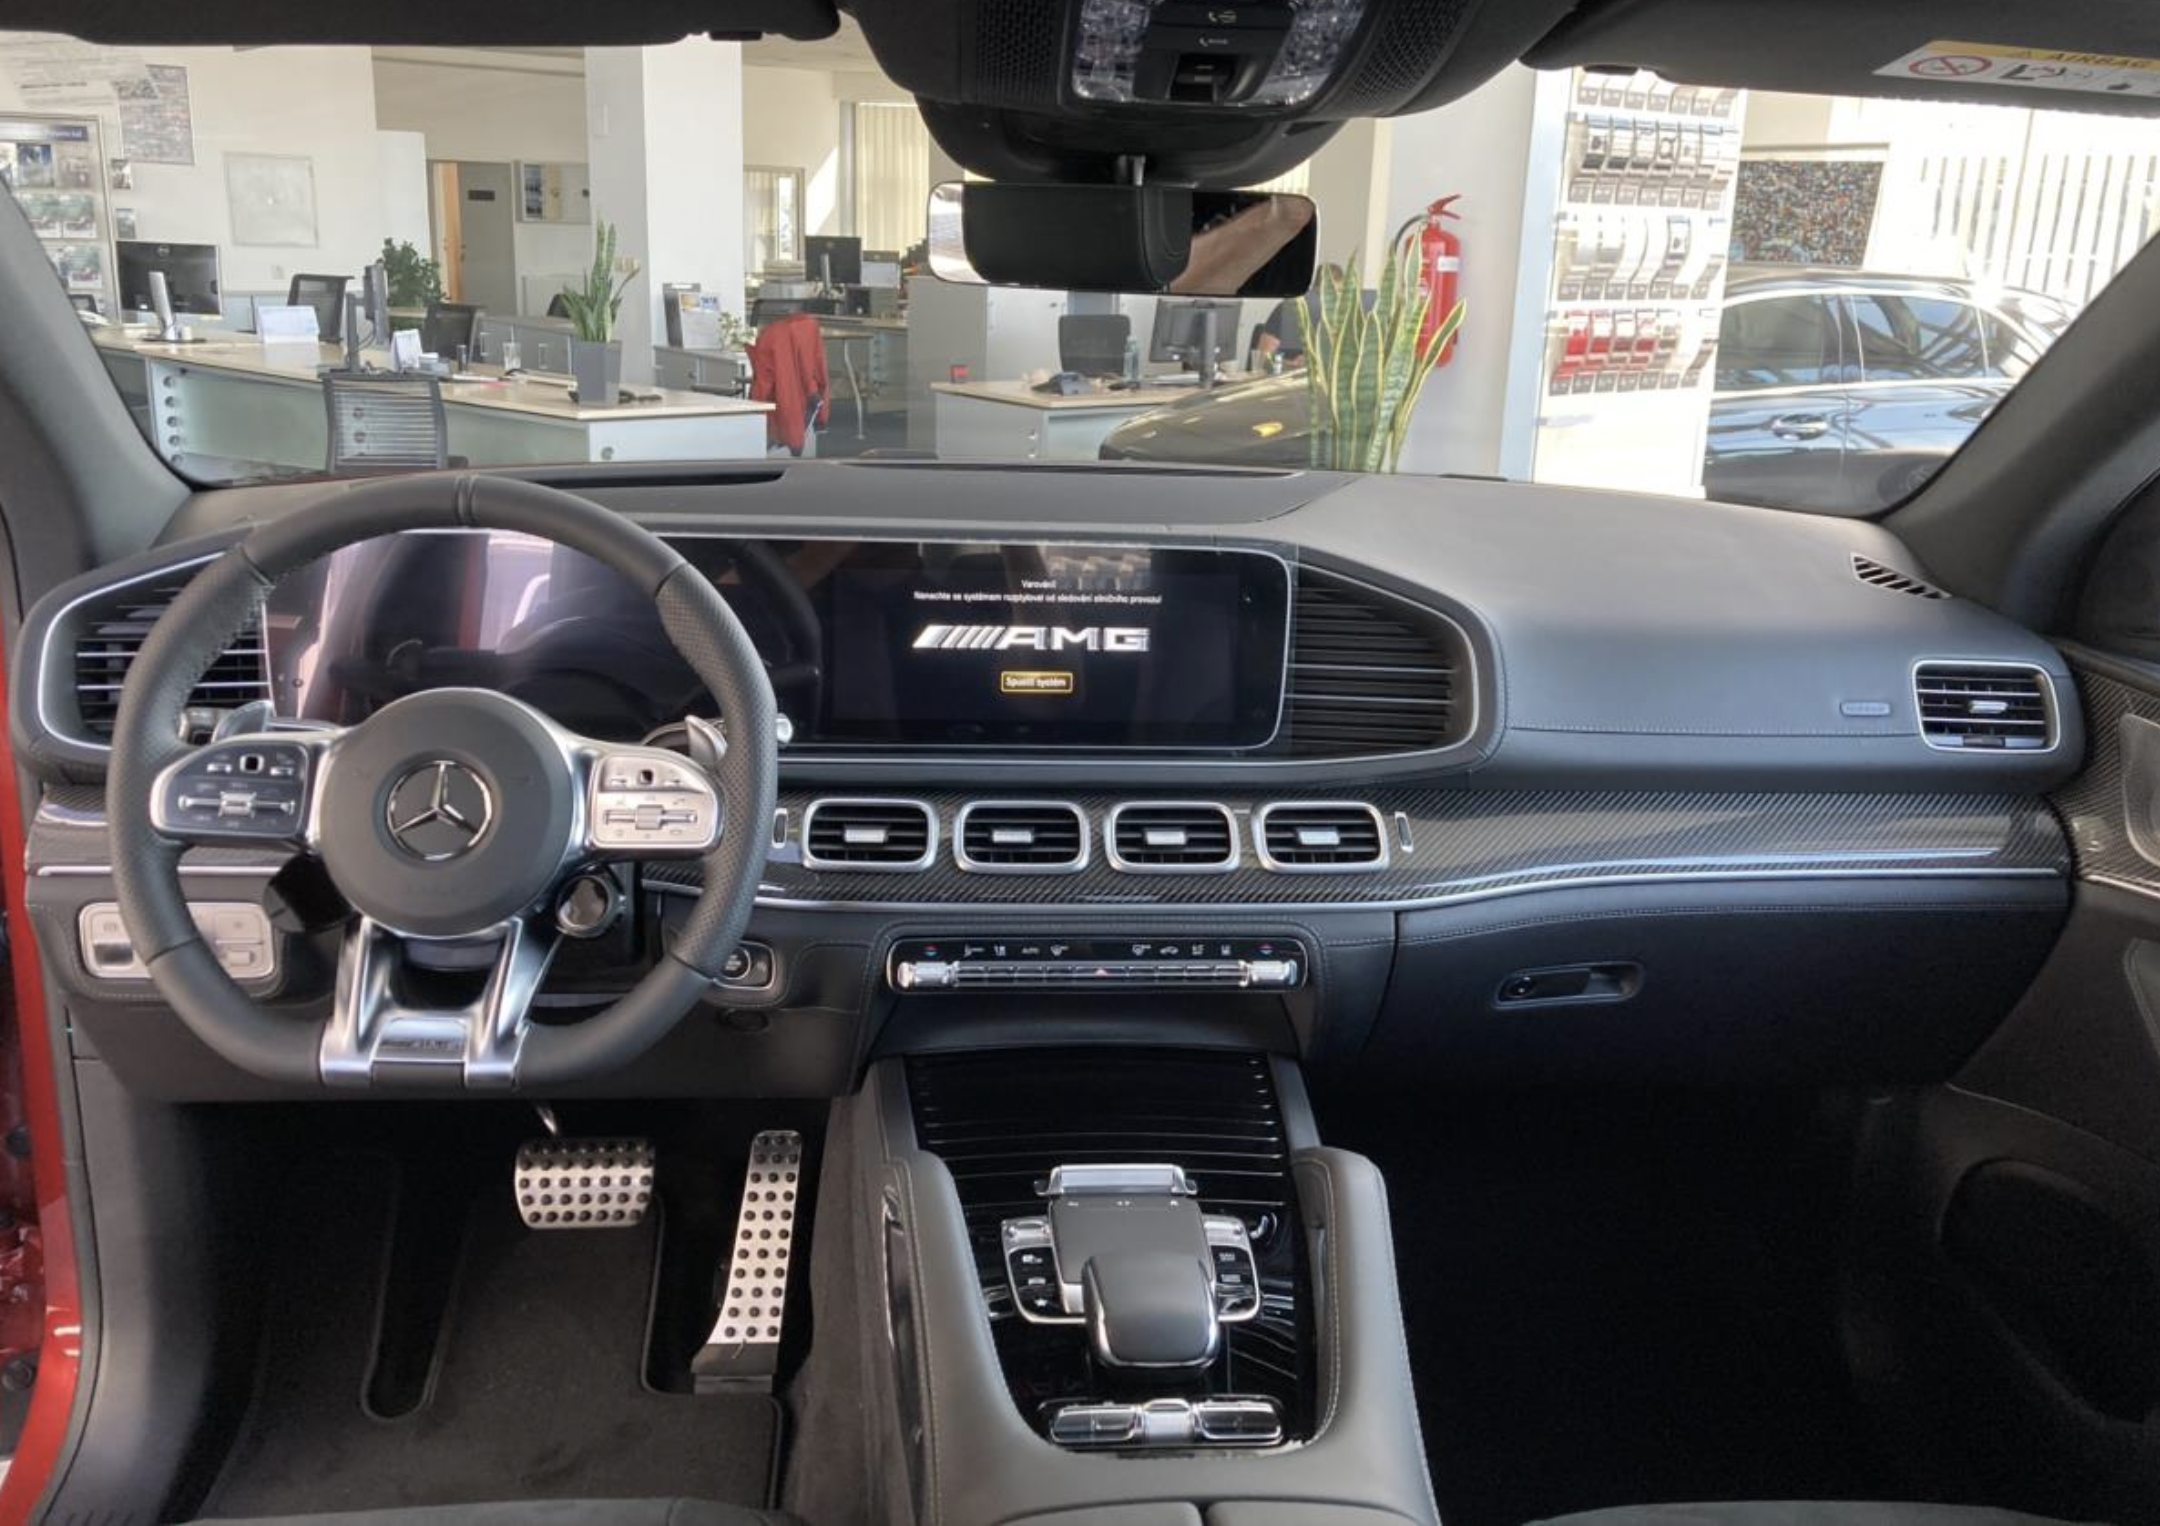 Mercedes GLE coupé 53 AMG | nové auto skladem | max výbava | červená hyacinth |sportovní luxusní SUV coupé | nákup online AUTOiBUY.com